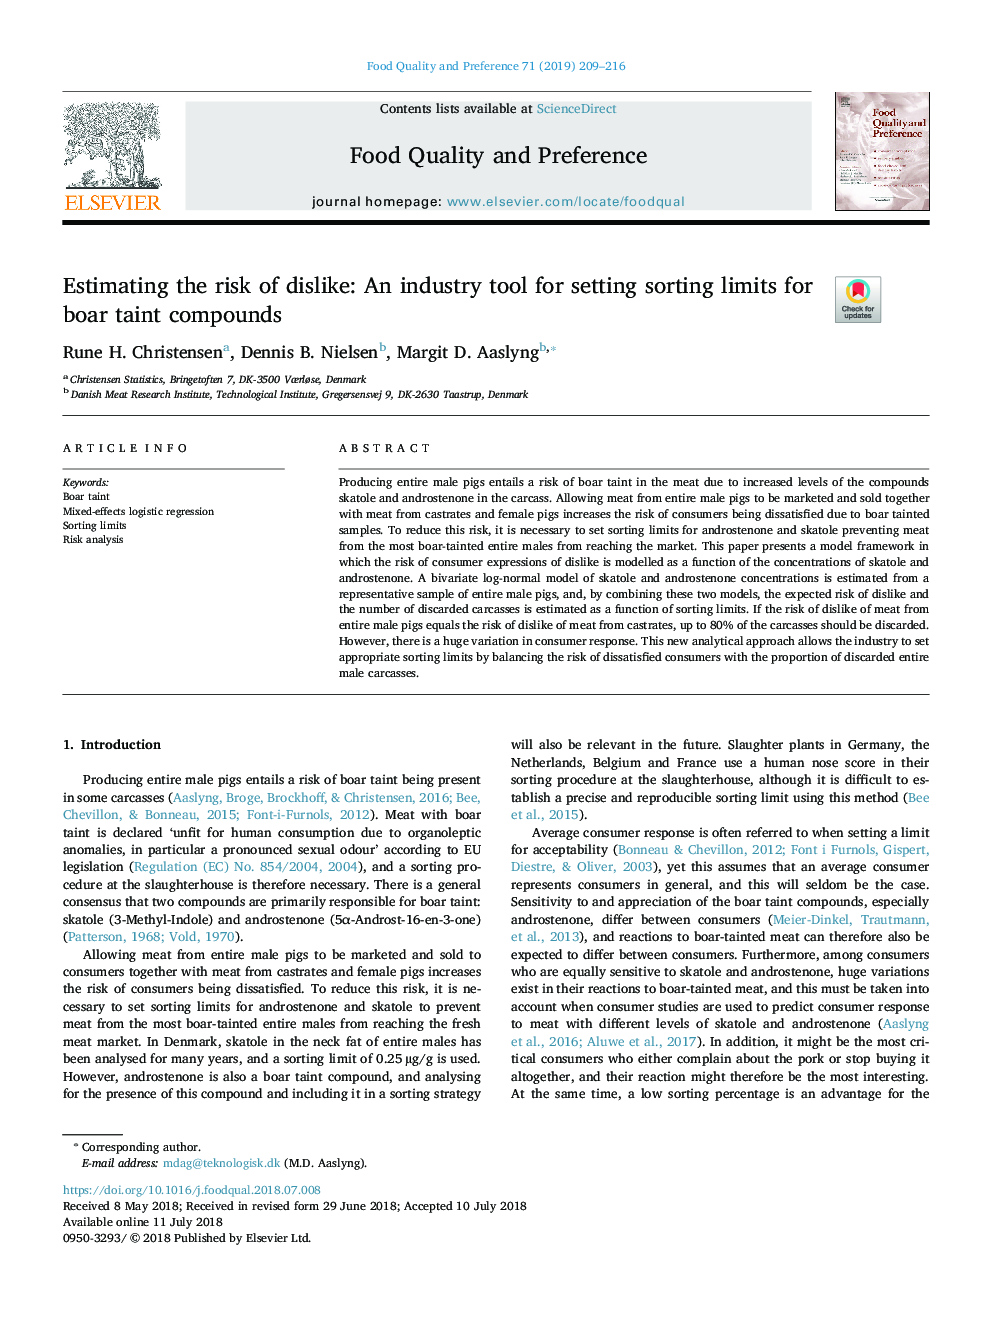 برآورد خطر ناسازگاری: یک ابزار صنعتی برای تنظیم مقادیر مرتب سازی برای ترکیبات دباغ گراز